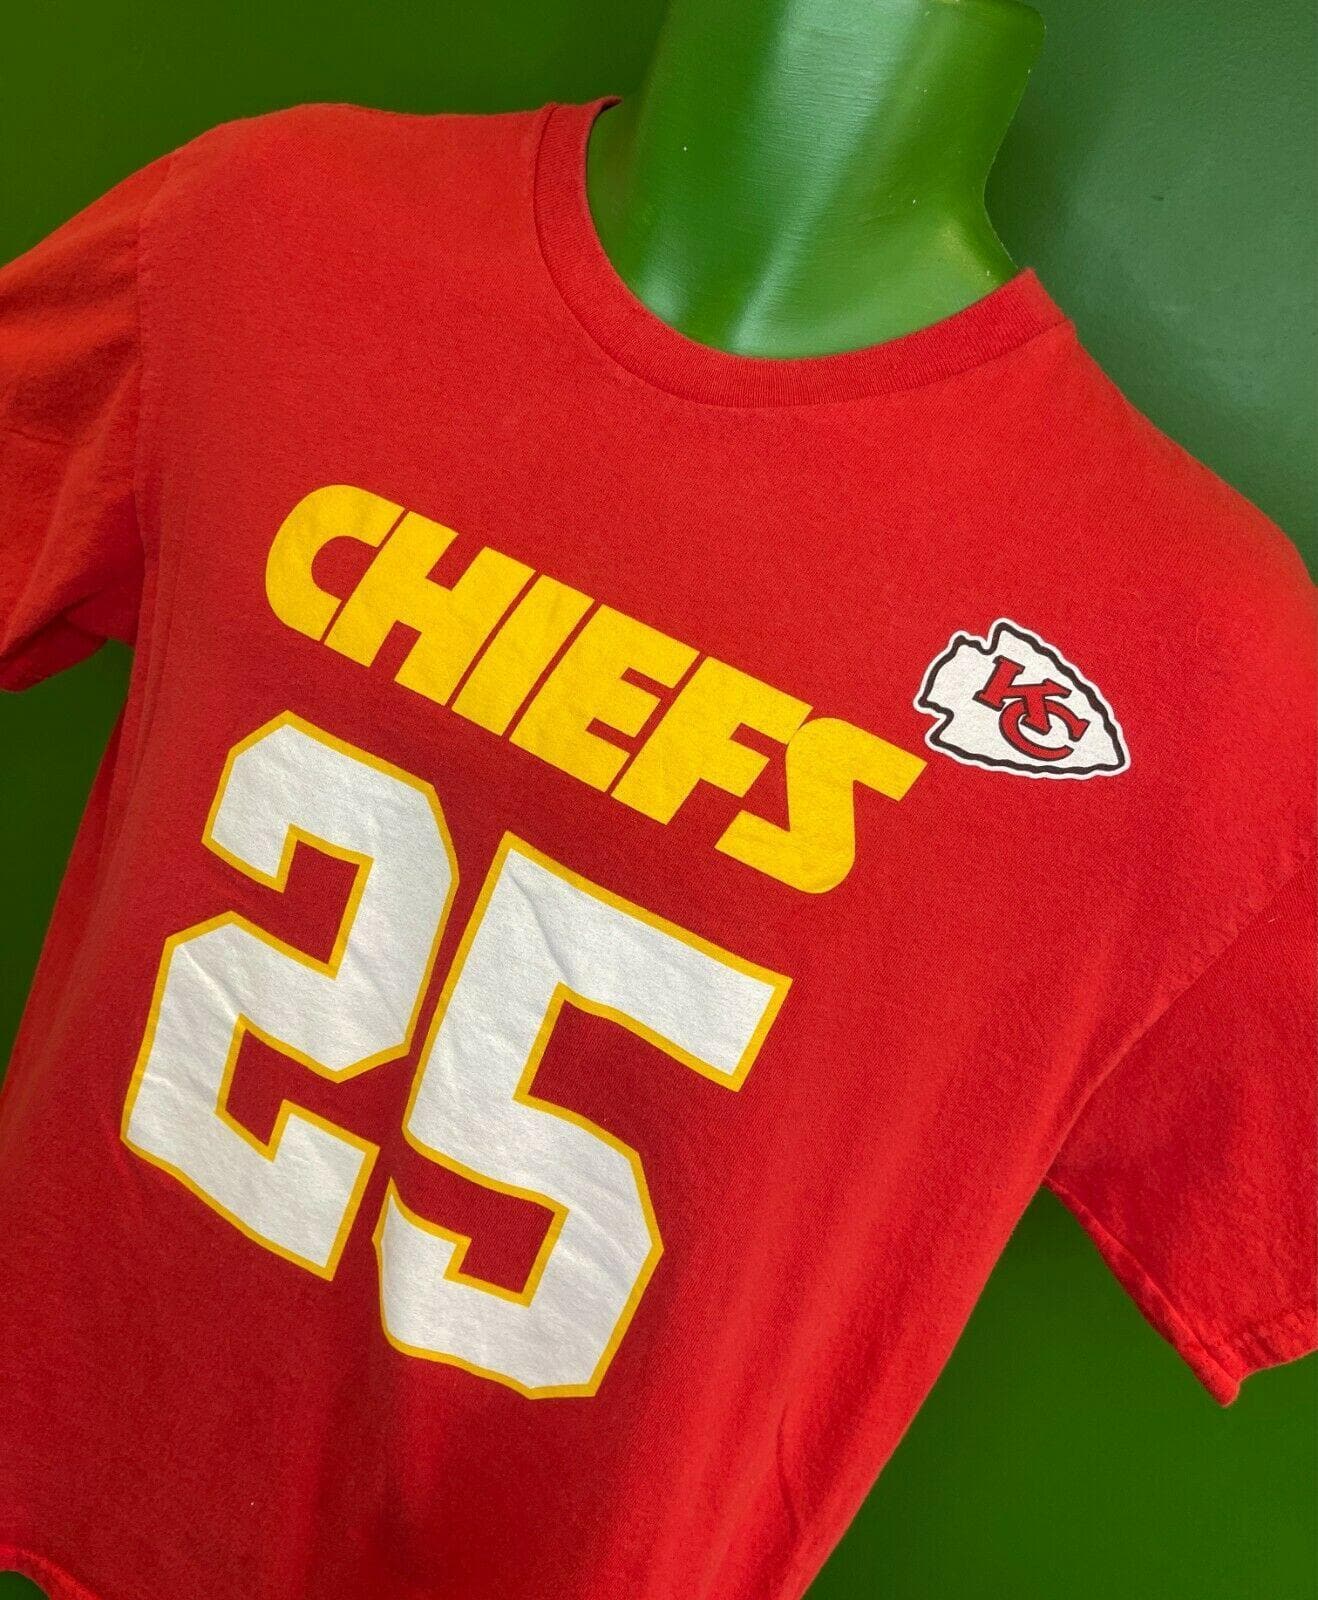 NFL Kansas City Chiefs Jamal Charles #25 T-Shirt Men's Large